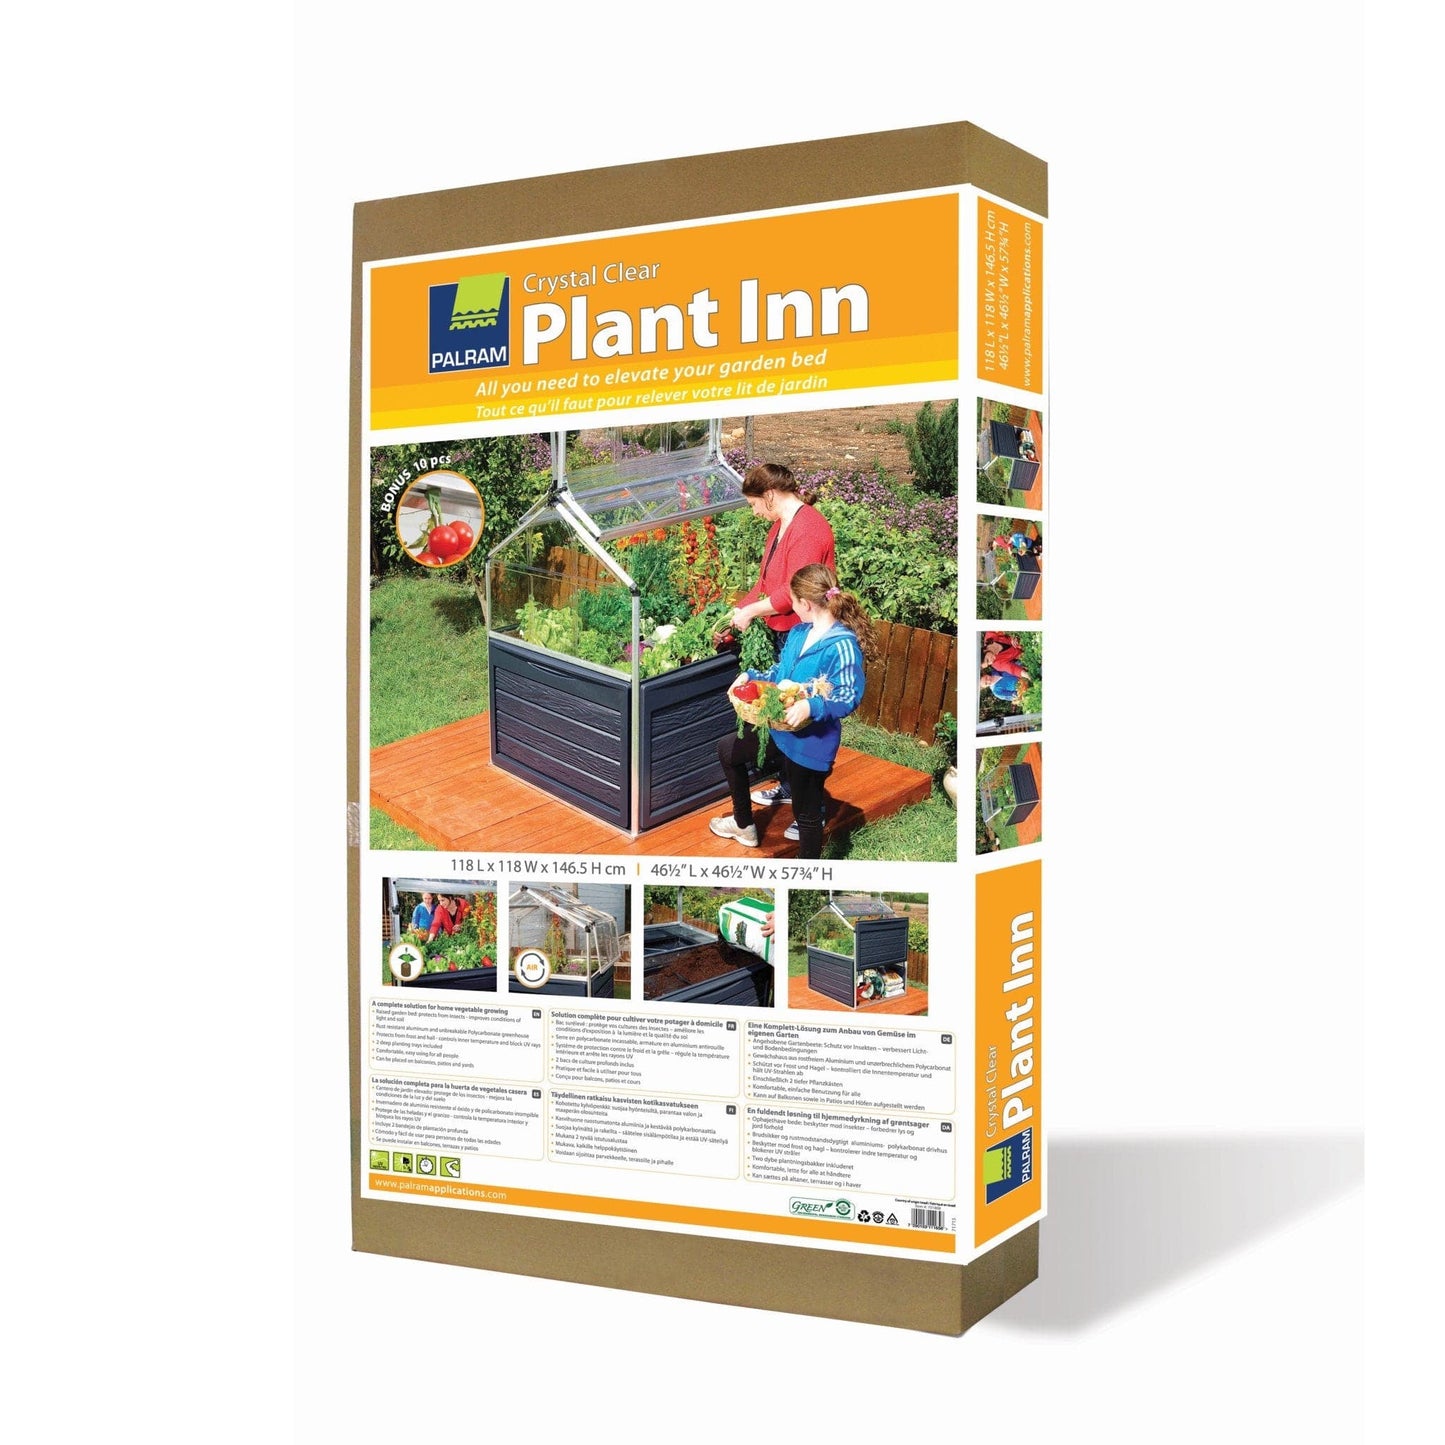 Palram - Canopia Plant Inn™ - mygreenhousestore.com